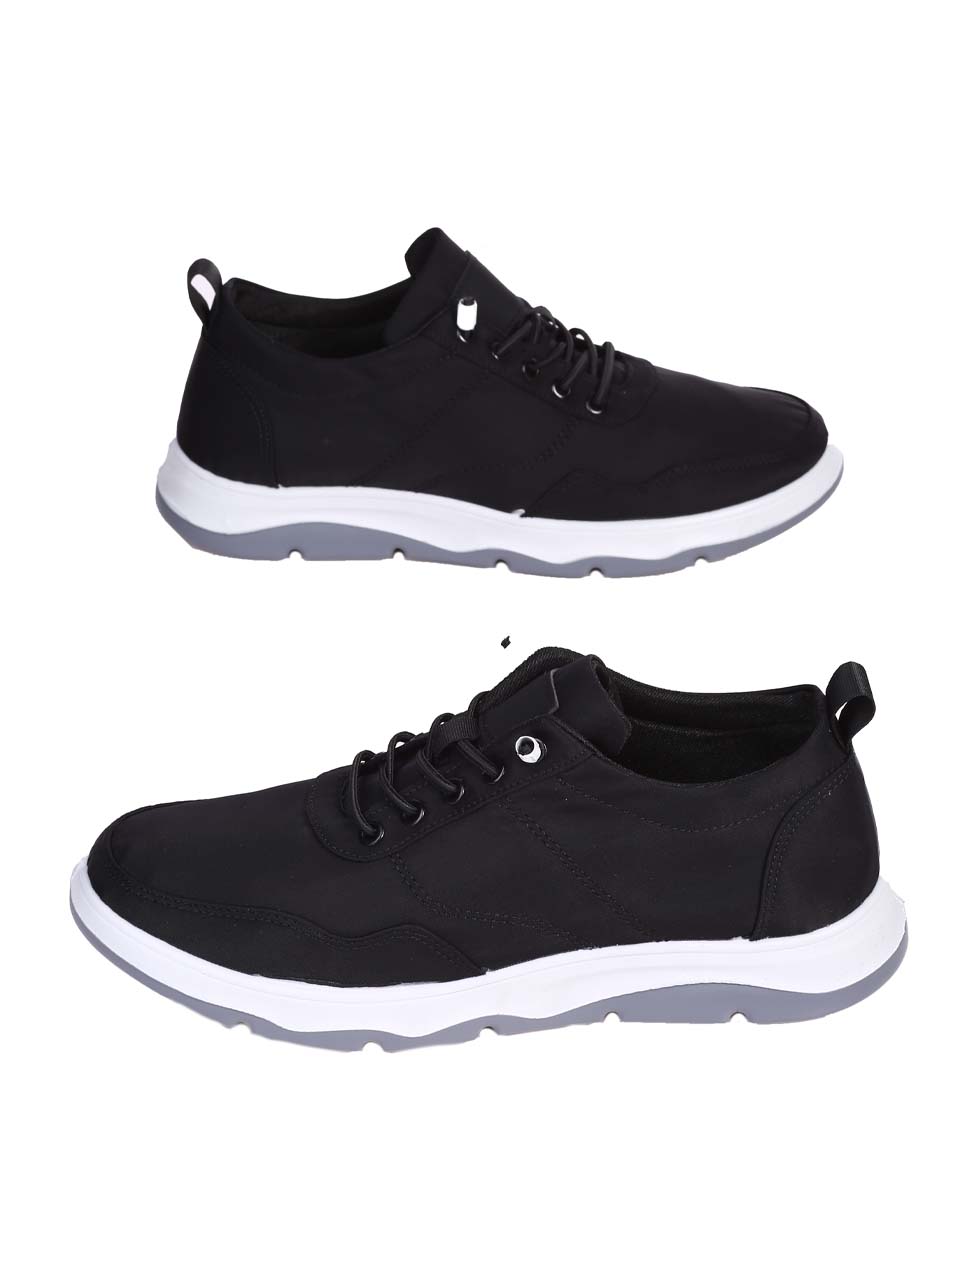 Ежедневни мъжки комфортни обувки в черно 7H-24189 black